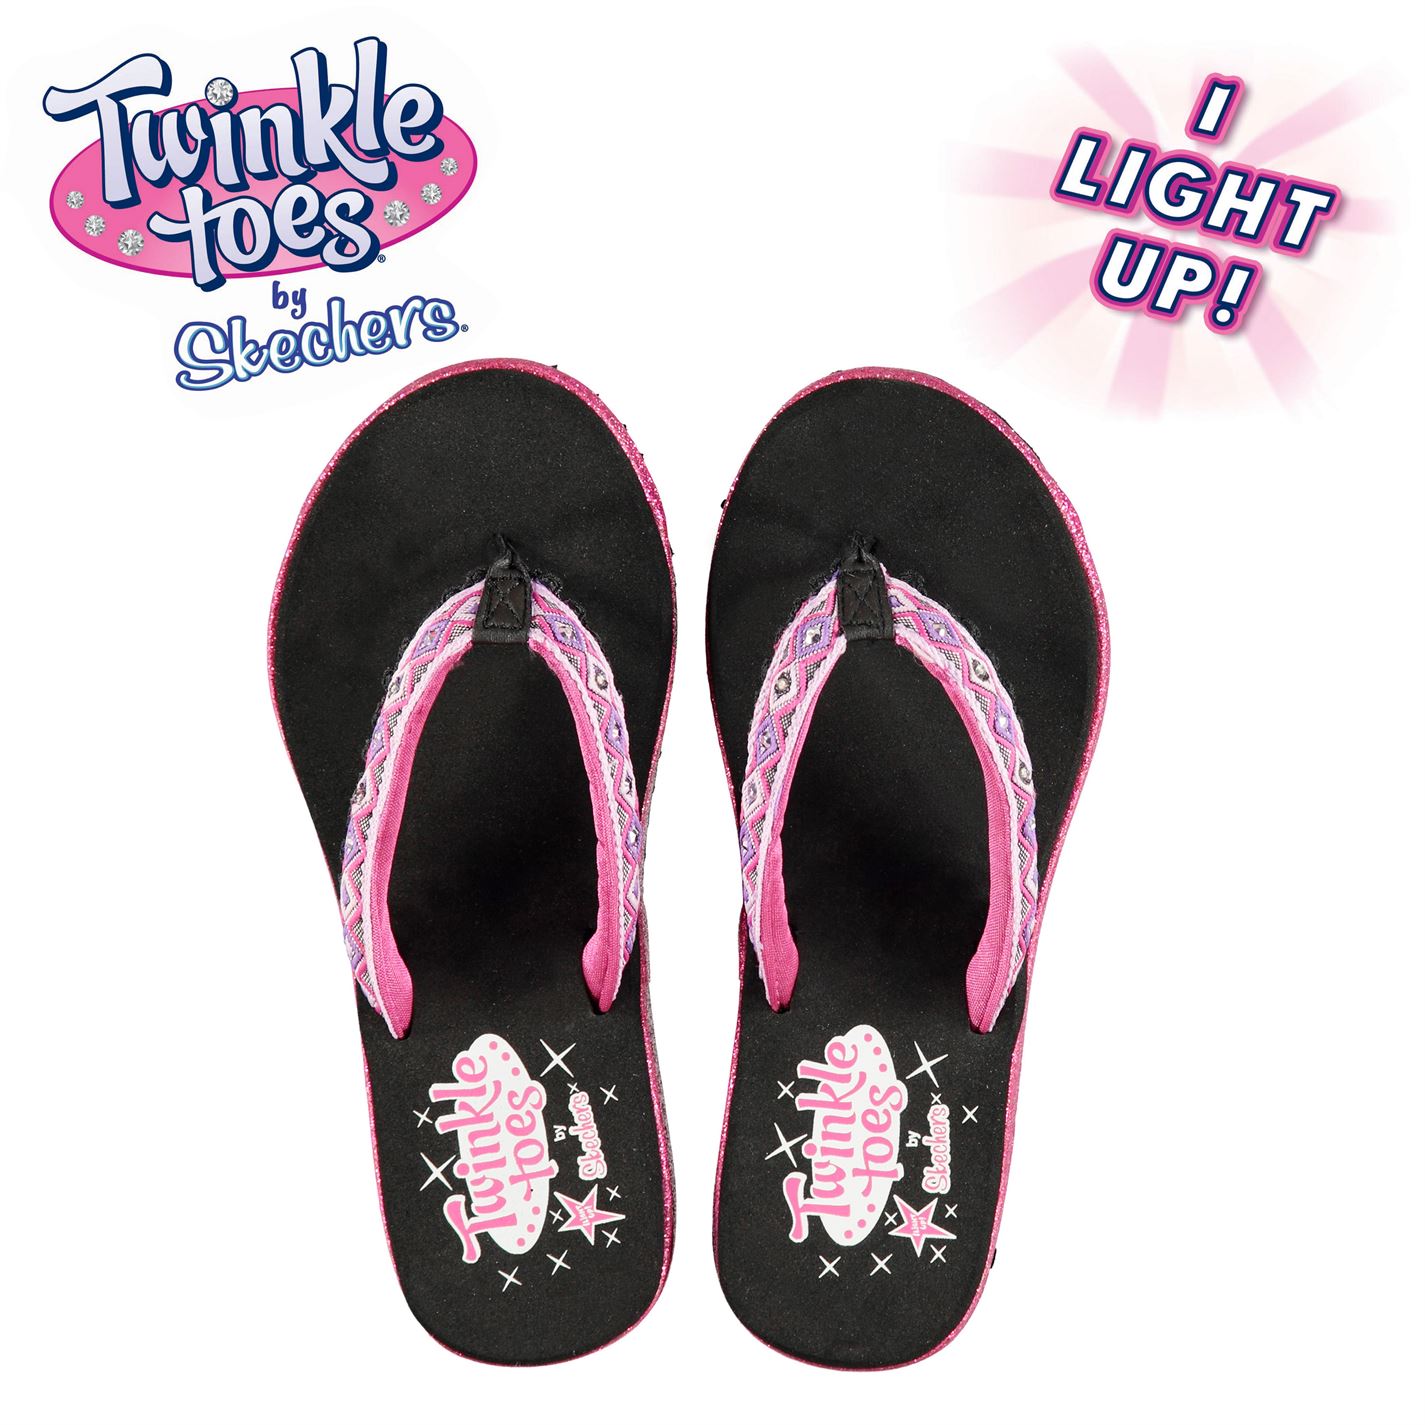 twinkle toes flip flops